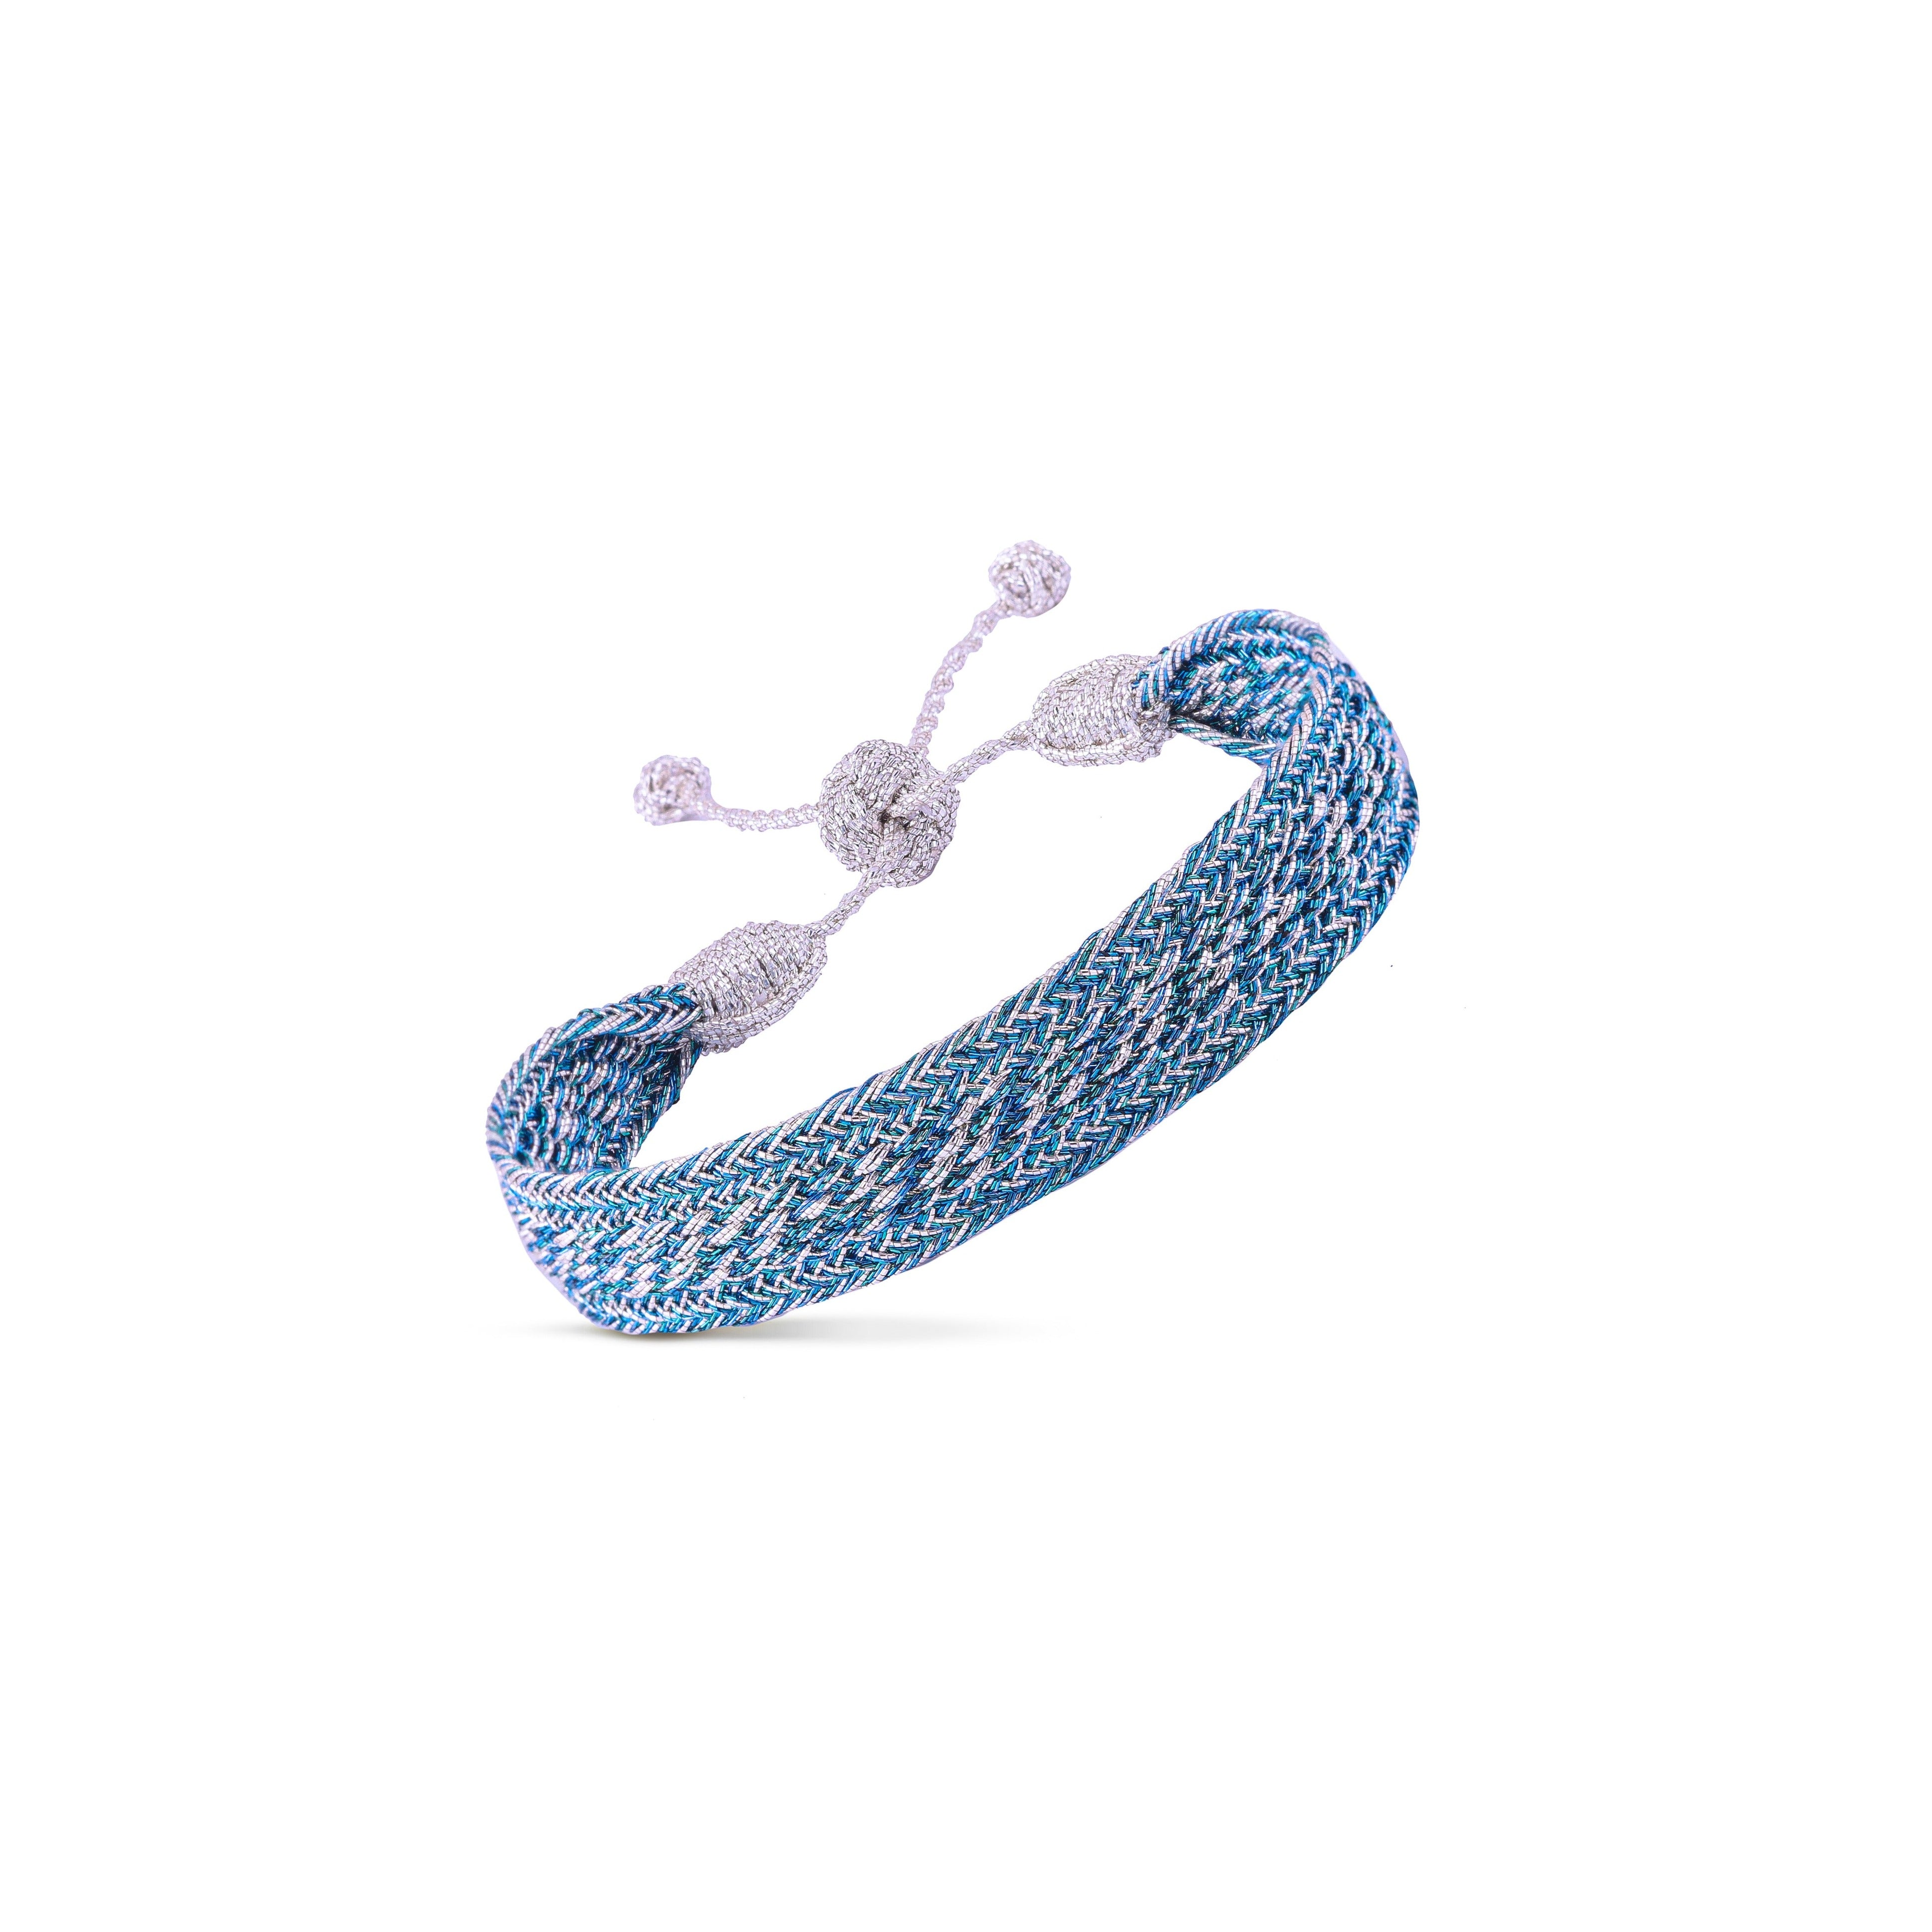 Izy n°1 Bracelet in Silver Blue Moon